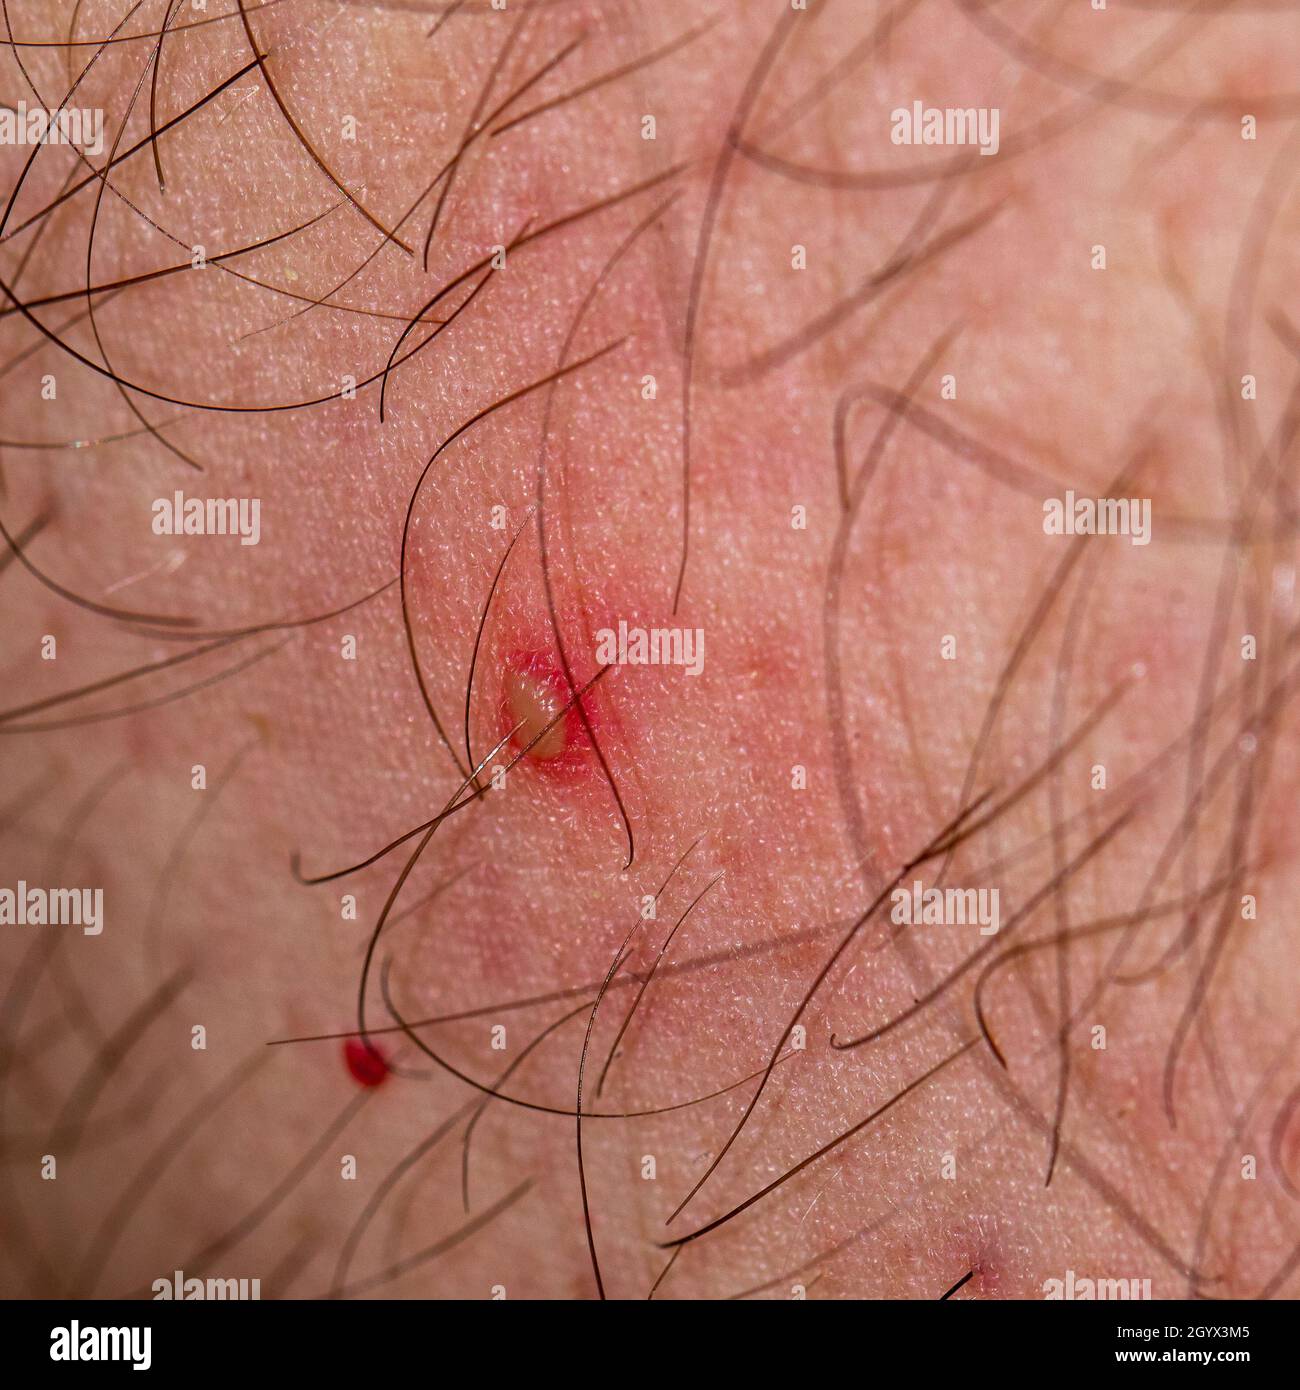 Detalle de un pequeño pustule inflamado en la piel de una persona caucásica Foto de stock